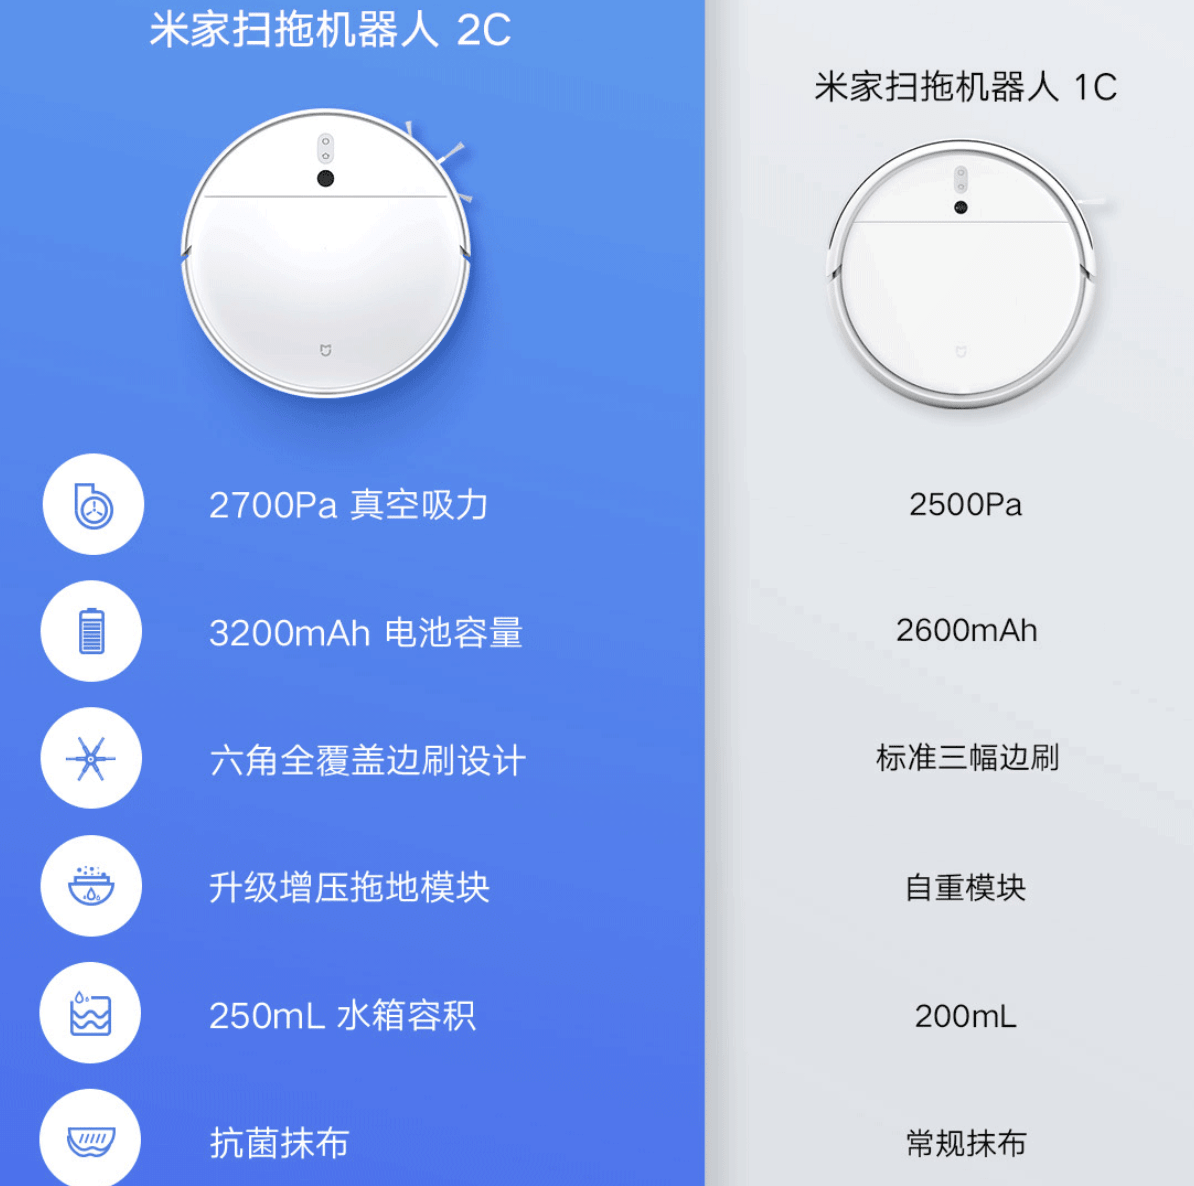 Xiaomi Mijia 2C Vacuum Cleaner United States